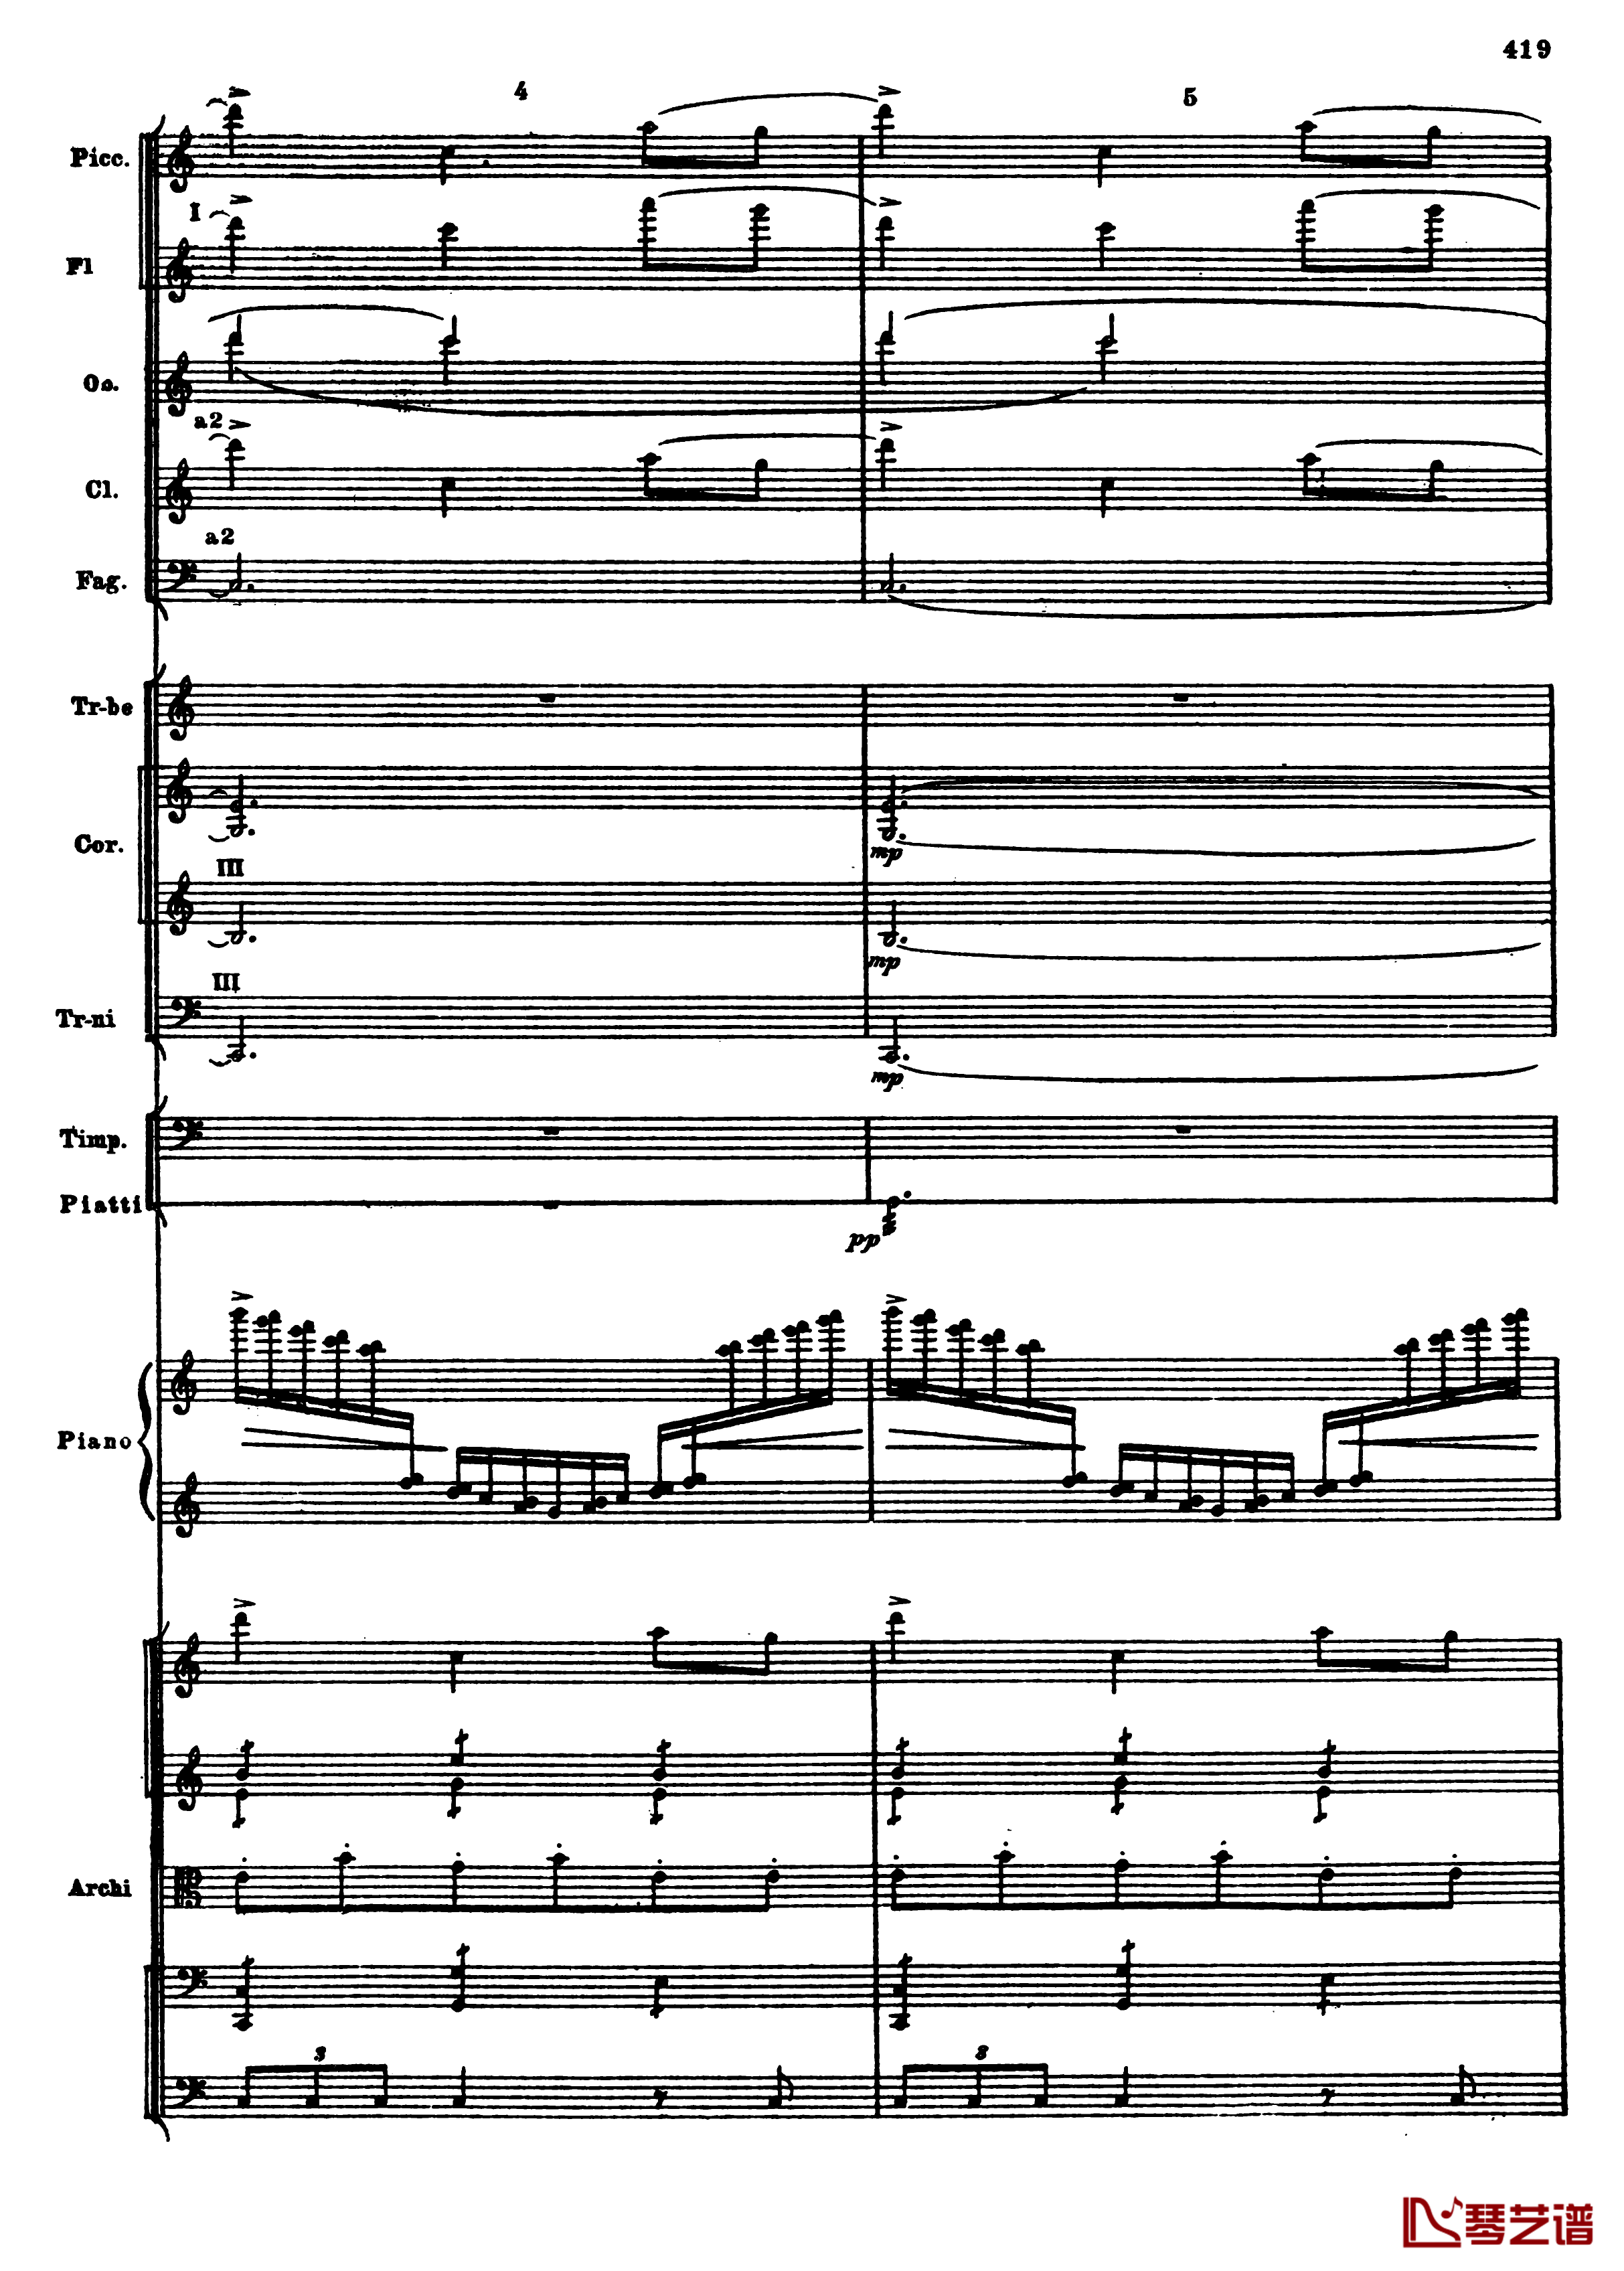 普罗科菲耶夫第三钢琴协奏曲钢琴谱-总谱-普罗科非耶夫151